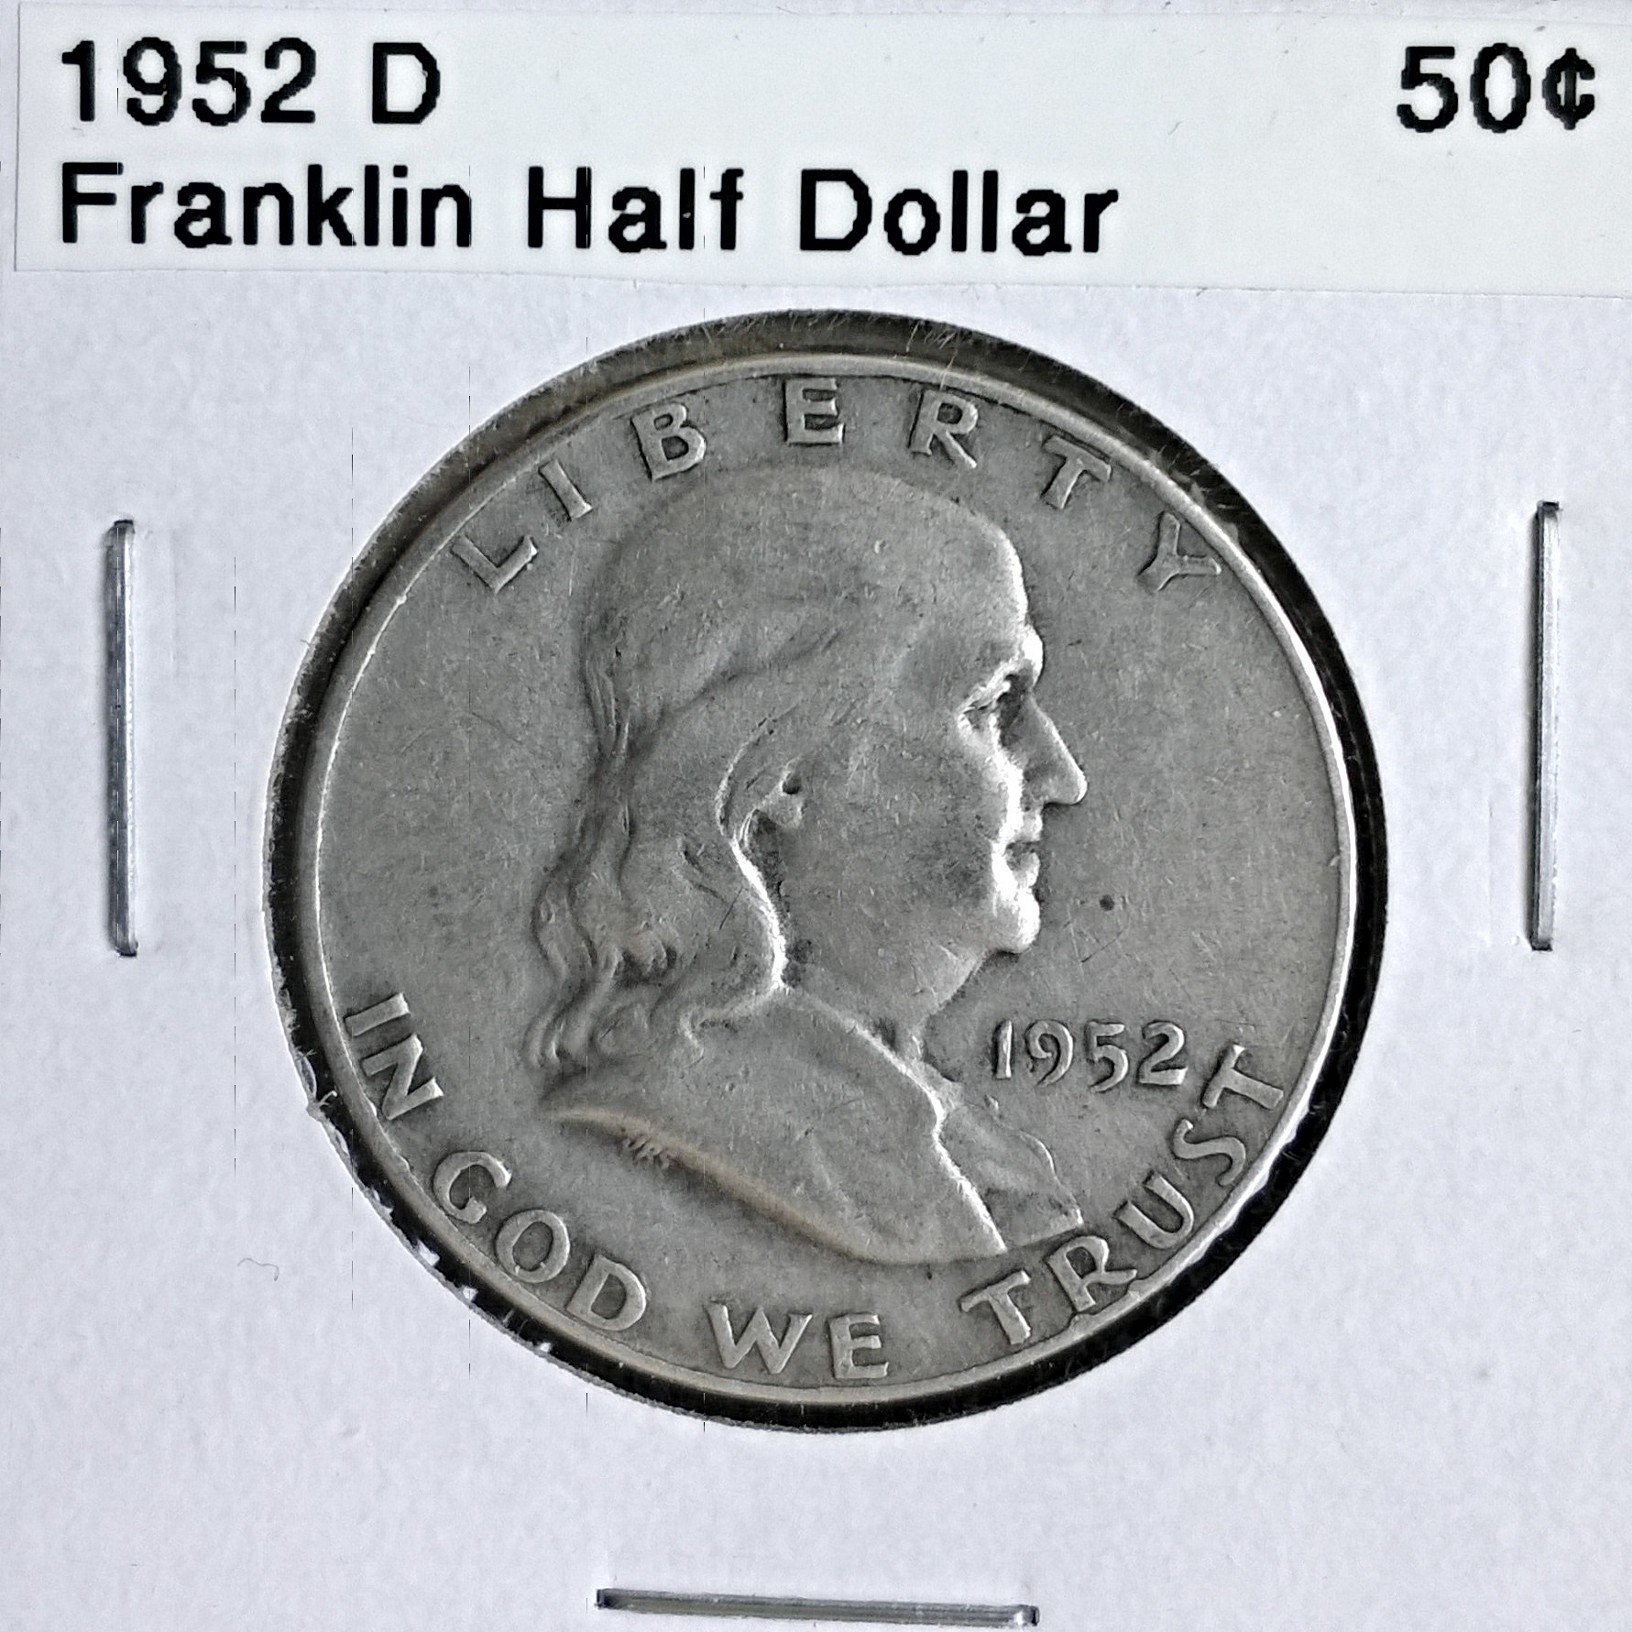 1952 D Franklin Half Dollar - for sale, buy now online - Item #173374